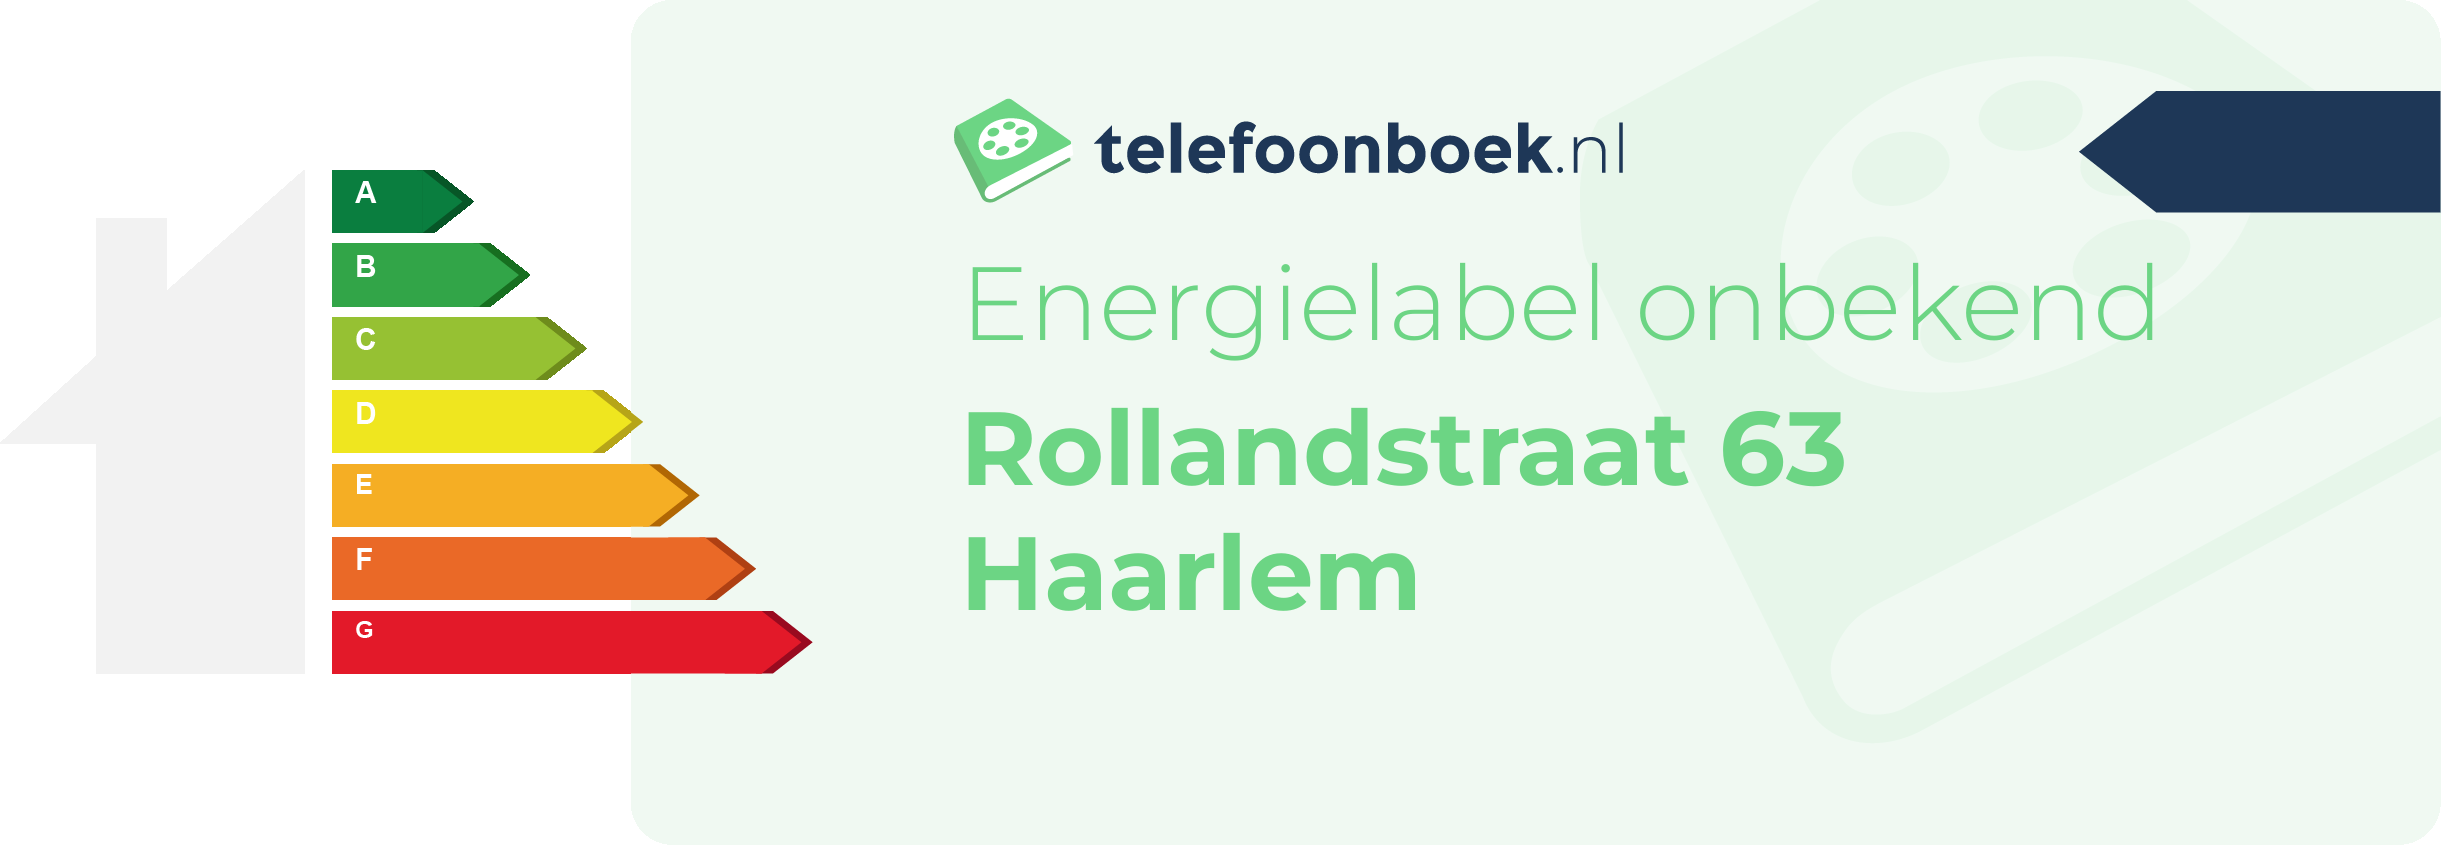 Energielabel Rollandstraat 63 Haarlem